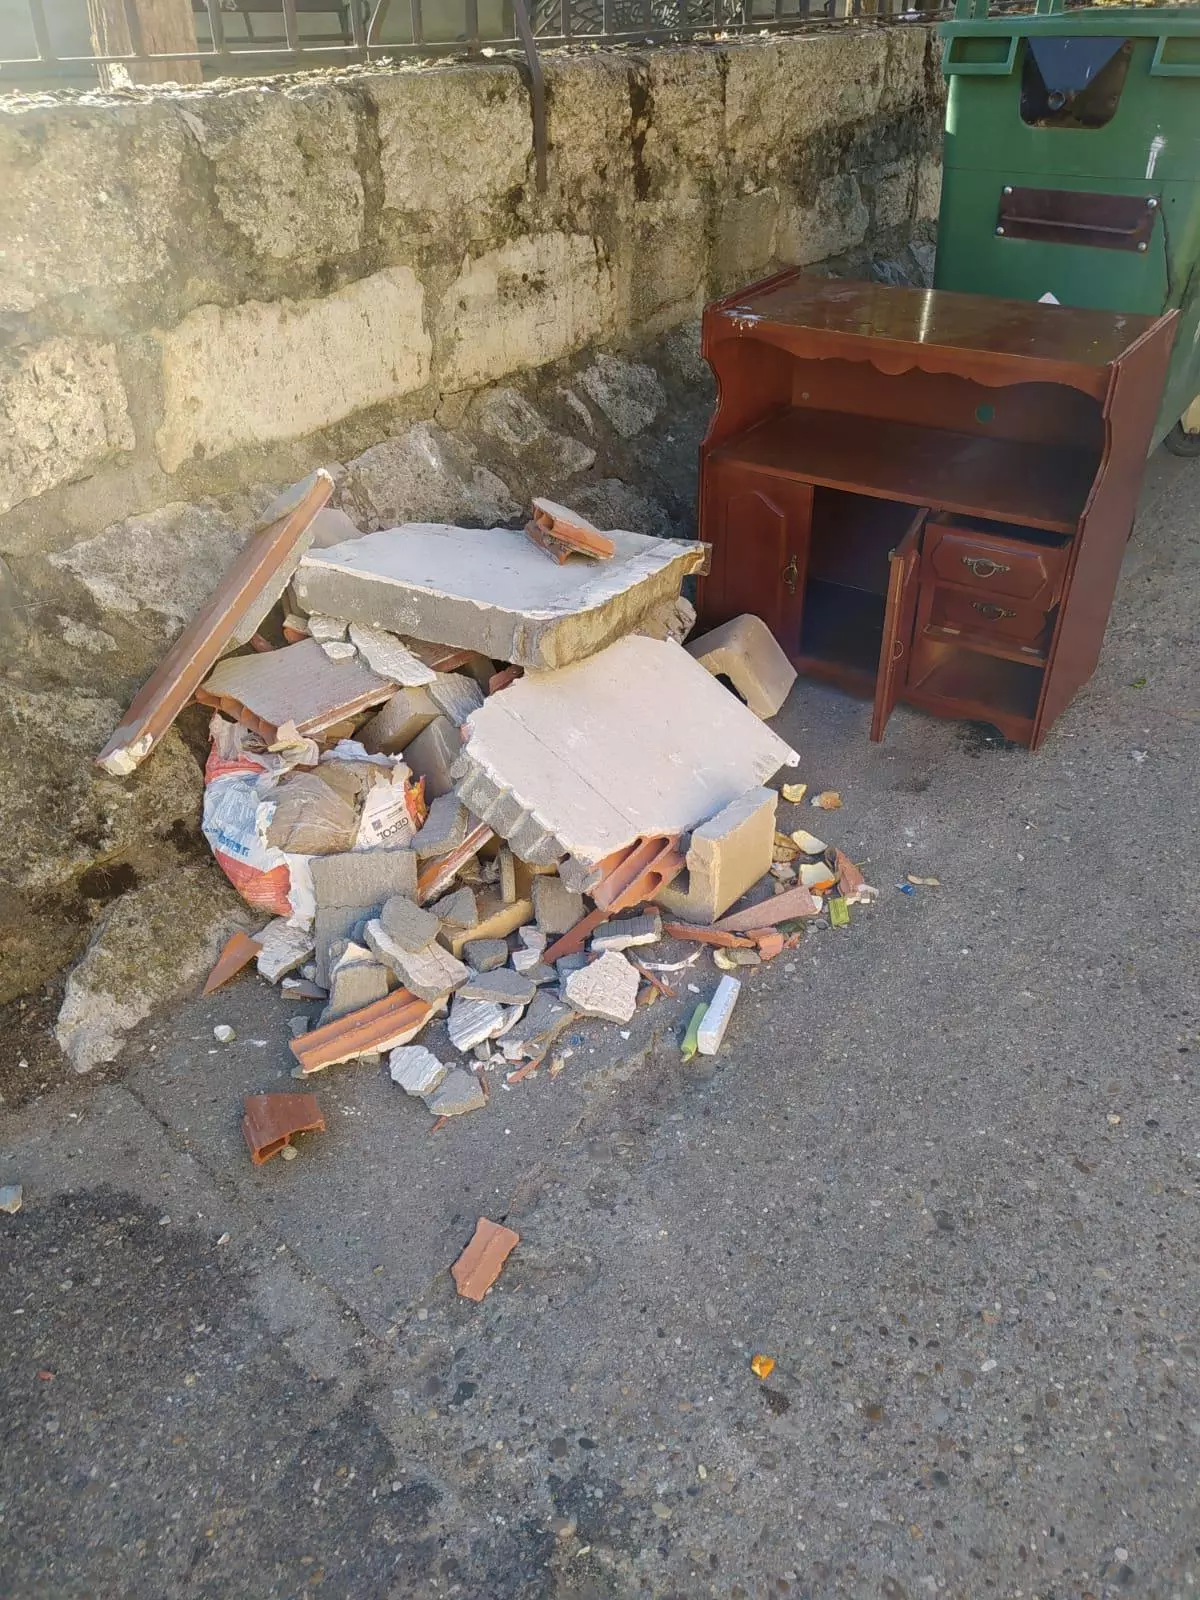 El Ayuntamiento de Toro denuncia el abandono de cascotes en contenedores